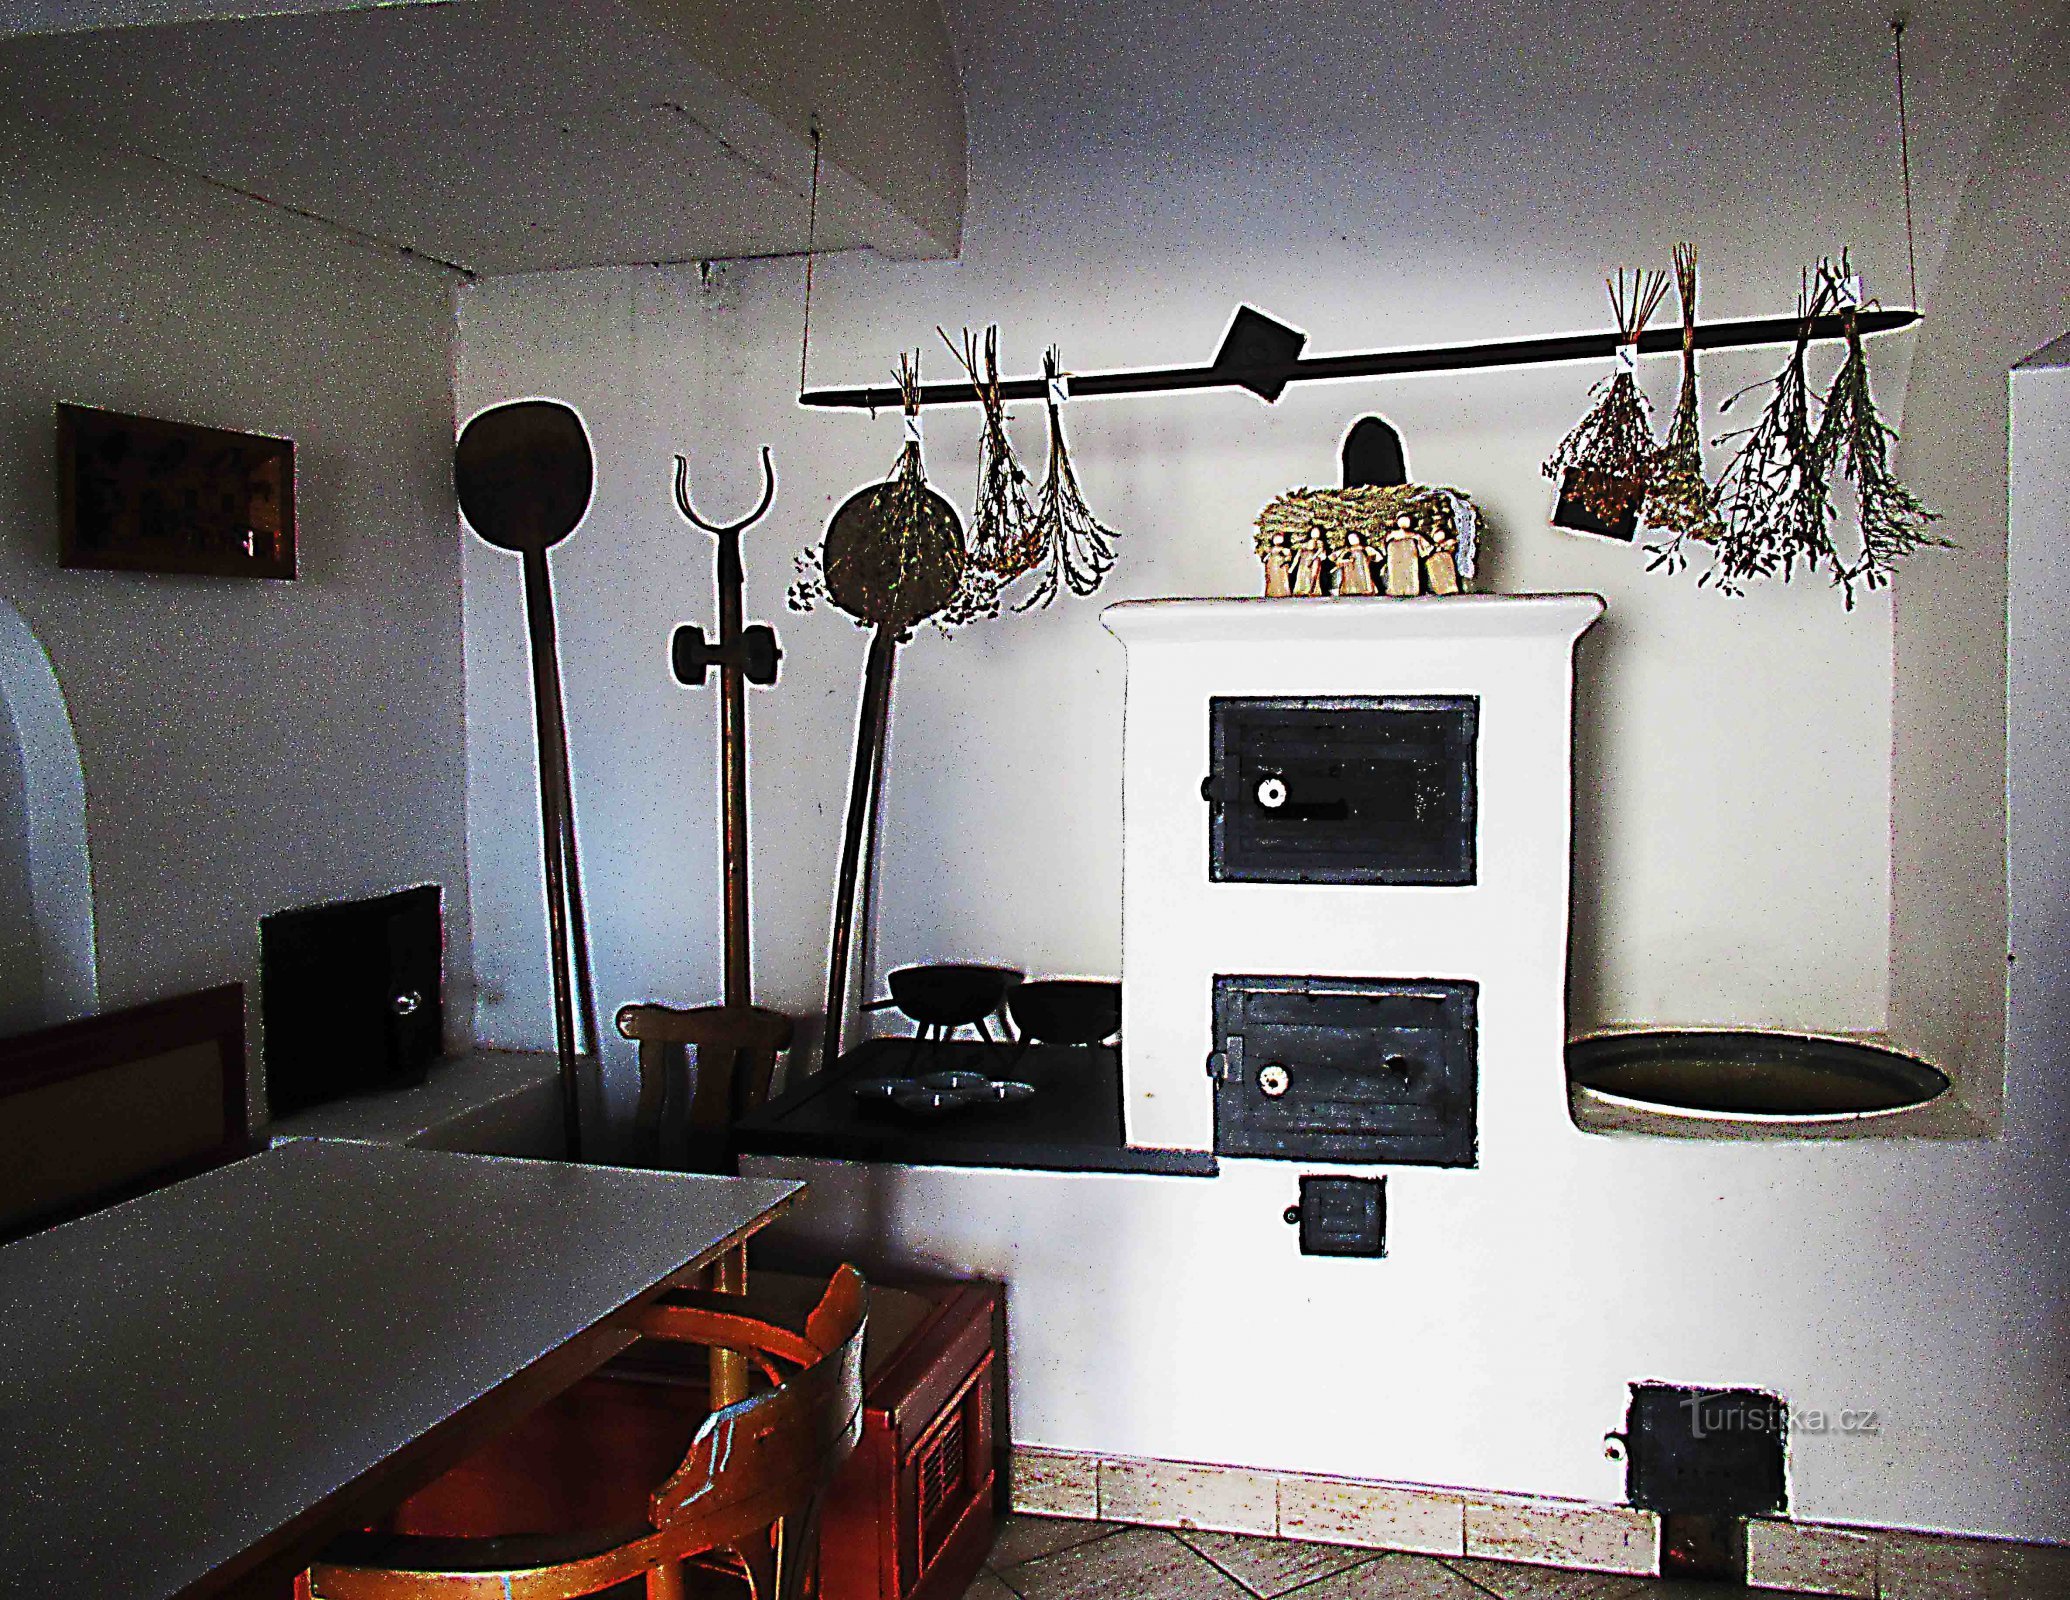 Holešov 泽曼铁匠铺中的小型锻造博物馆